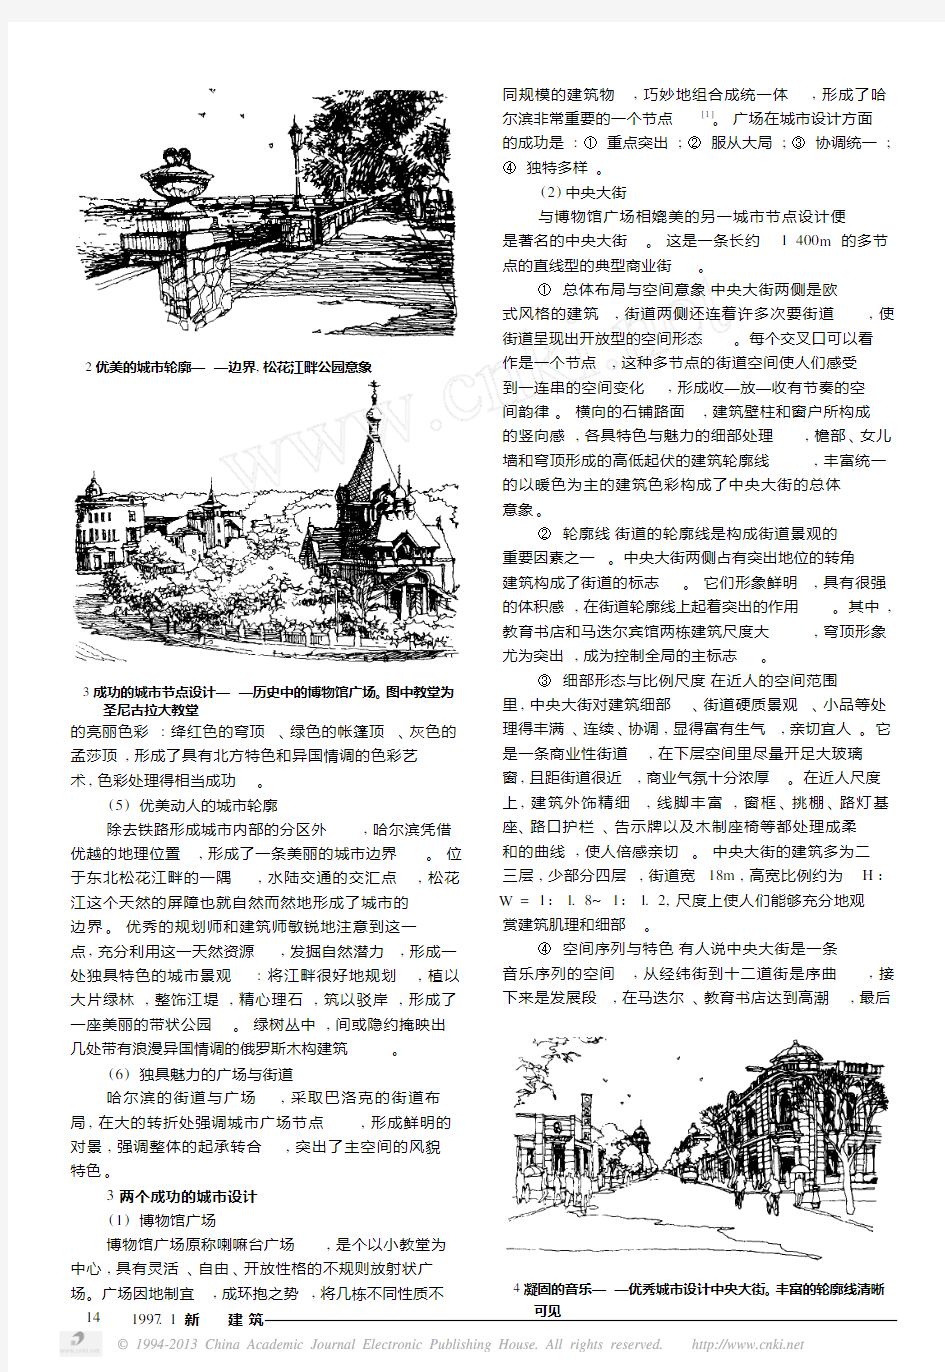 哈尔滨的旧城改造与城市设计问题_兼论城市设计的历史继承与创新发展